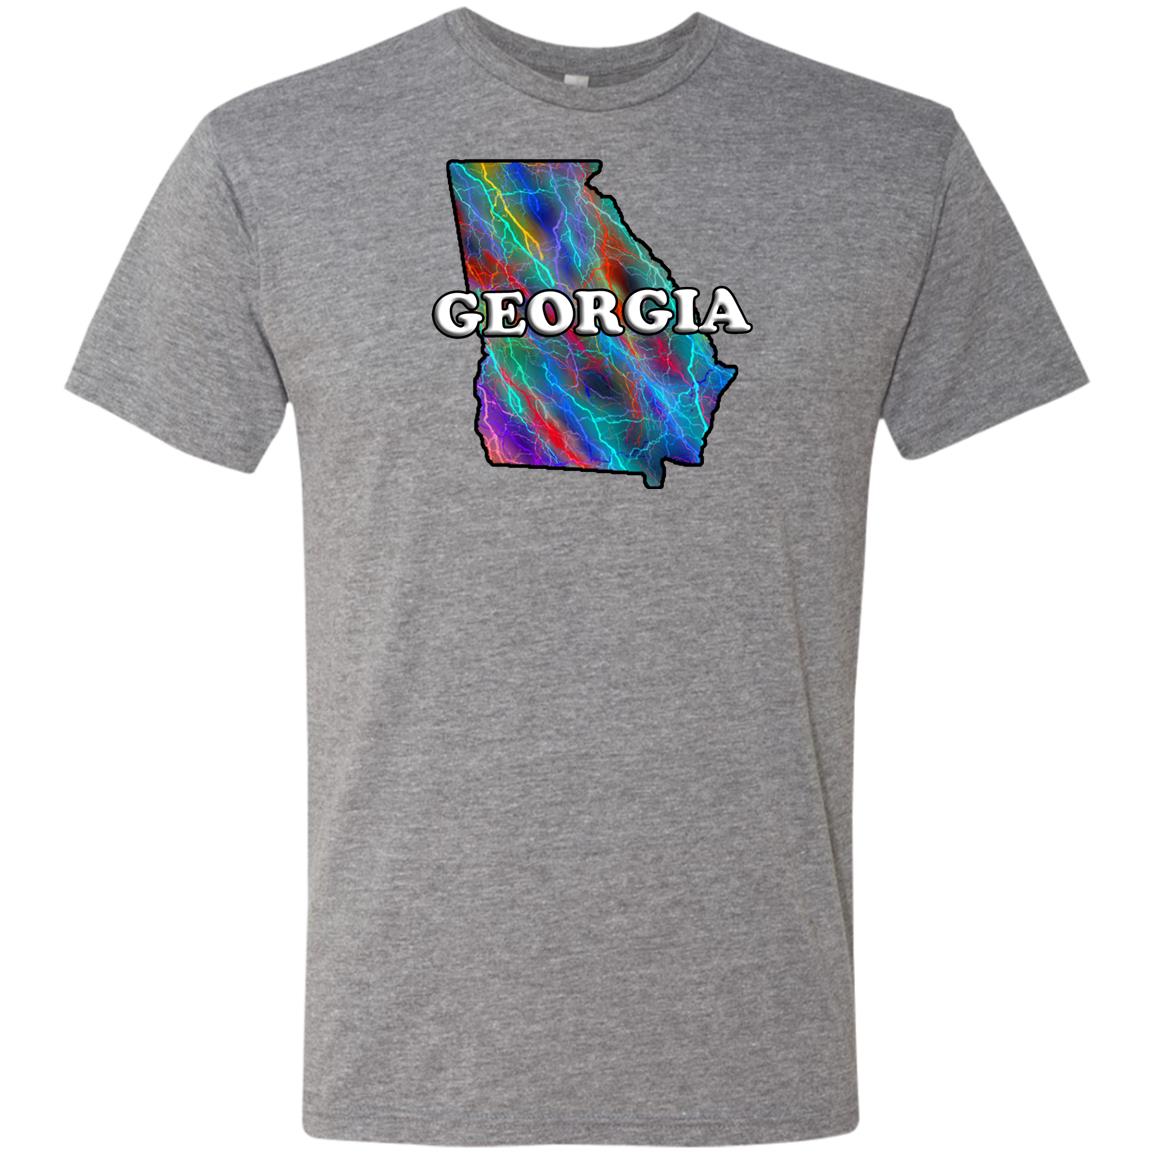 Georgia State T-Shirt